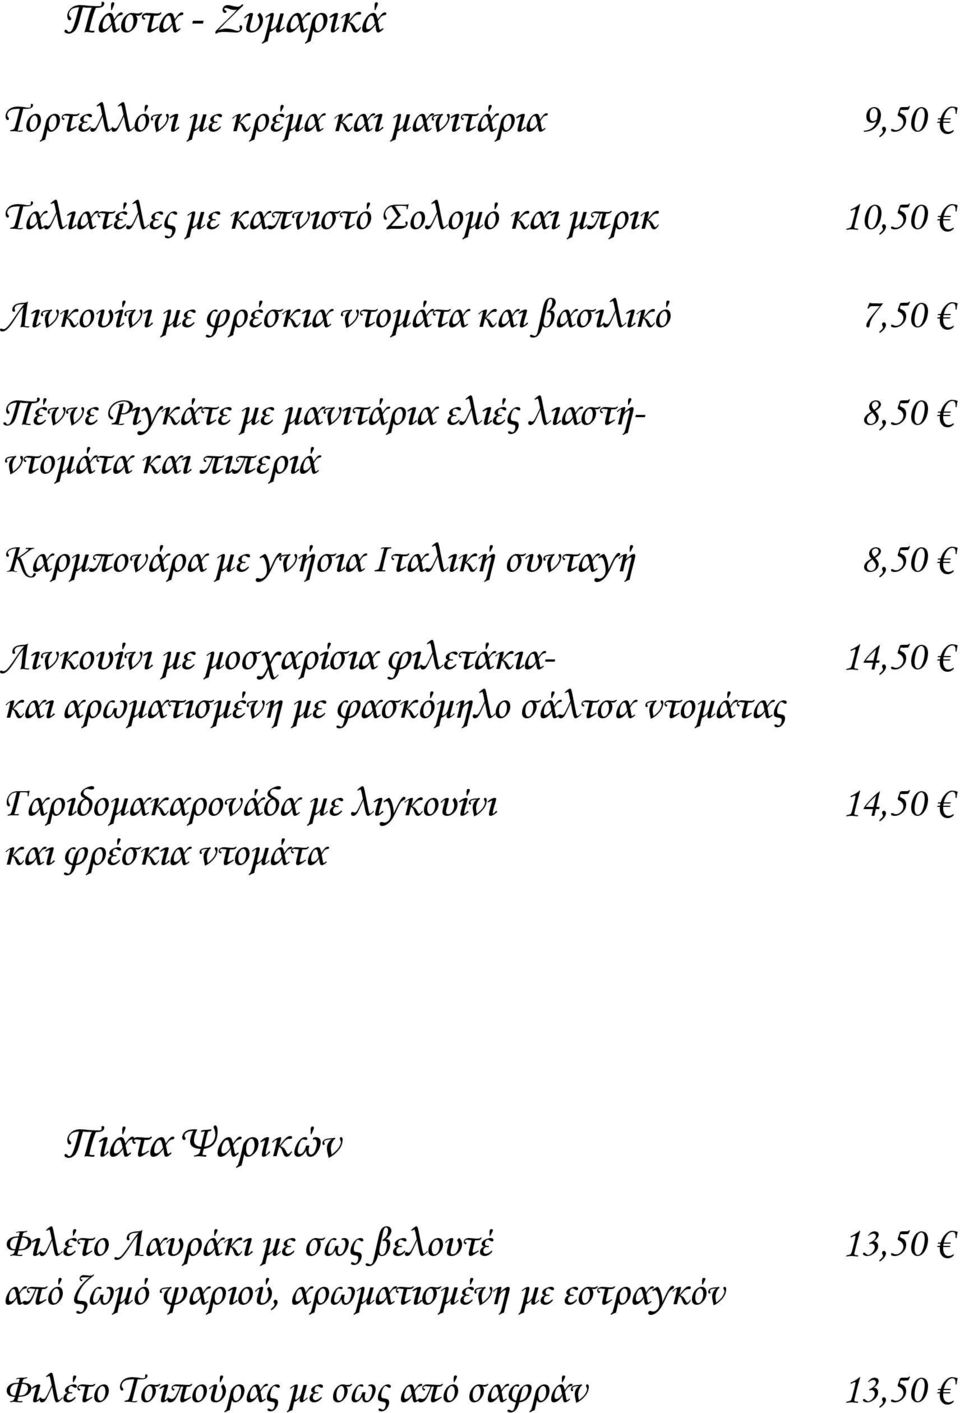 Λινκουίνι με μοσχαρίσια φιλετάκια- 14,50 και αρωματισμένη με φασκόμηλο σάλτσα ντομάτας Γαριδομακαρονάδα με λιγκουίνι 14,50 και